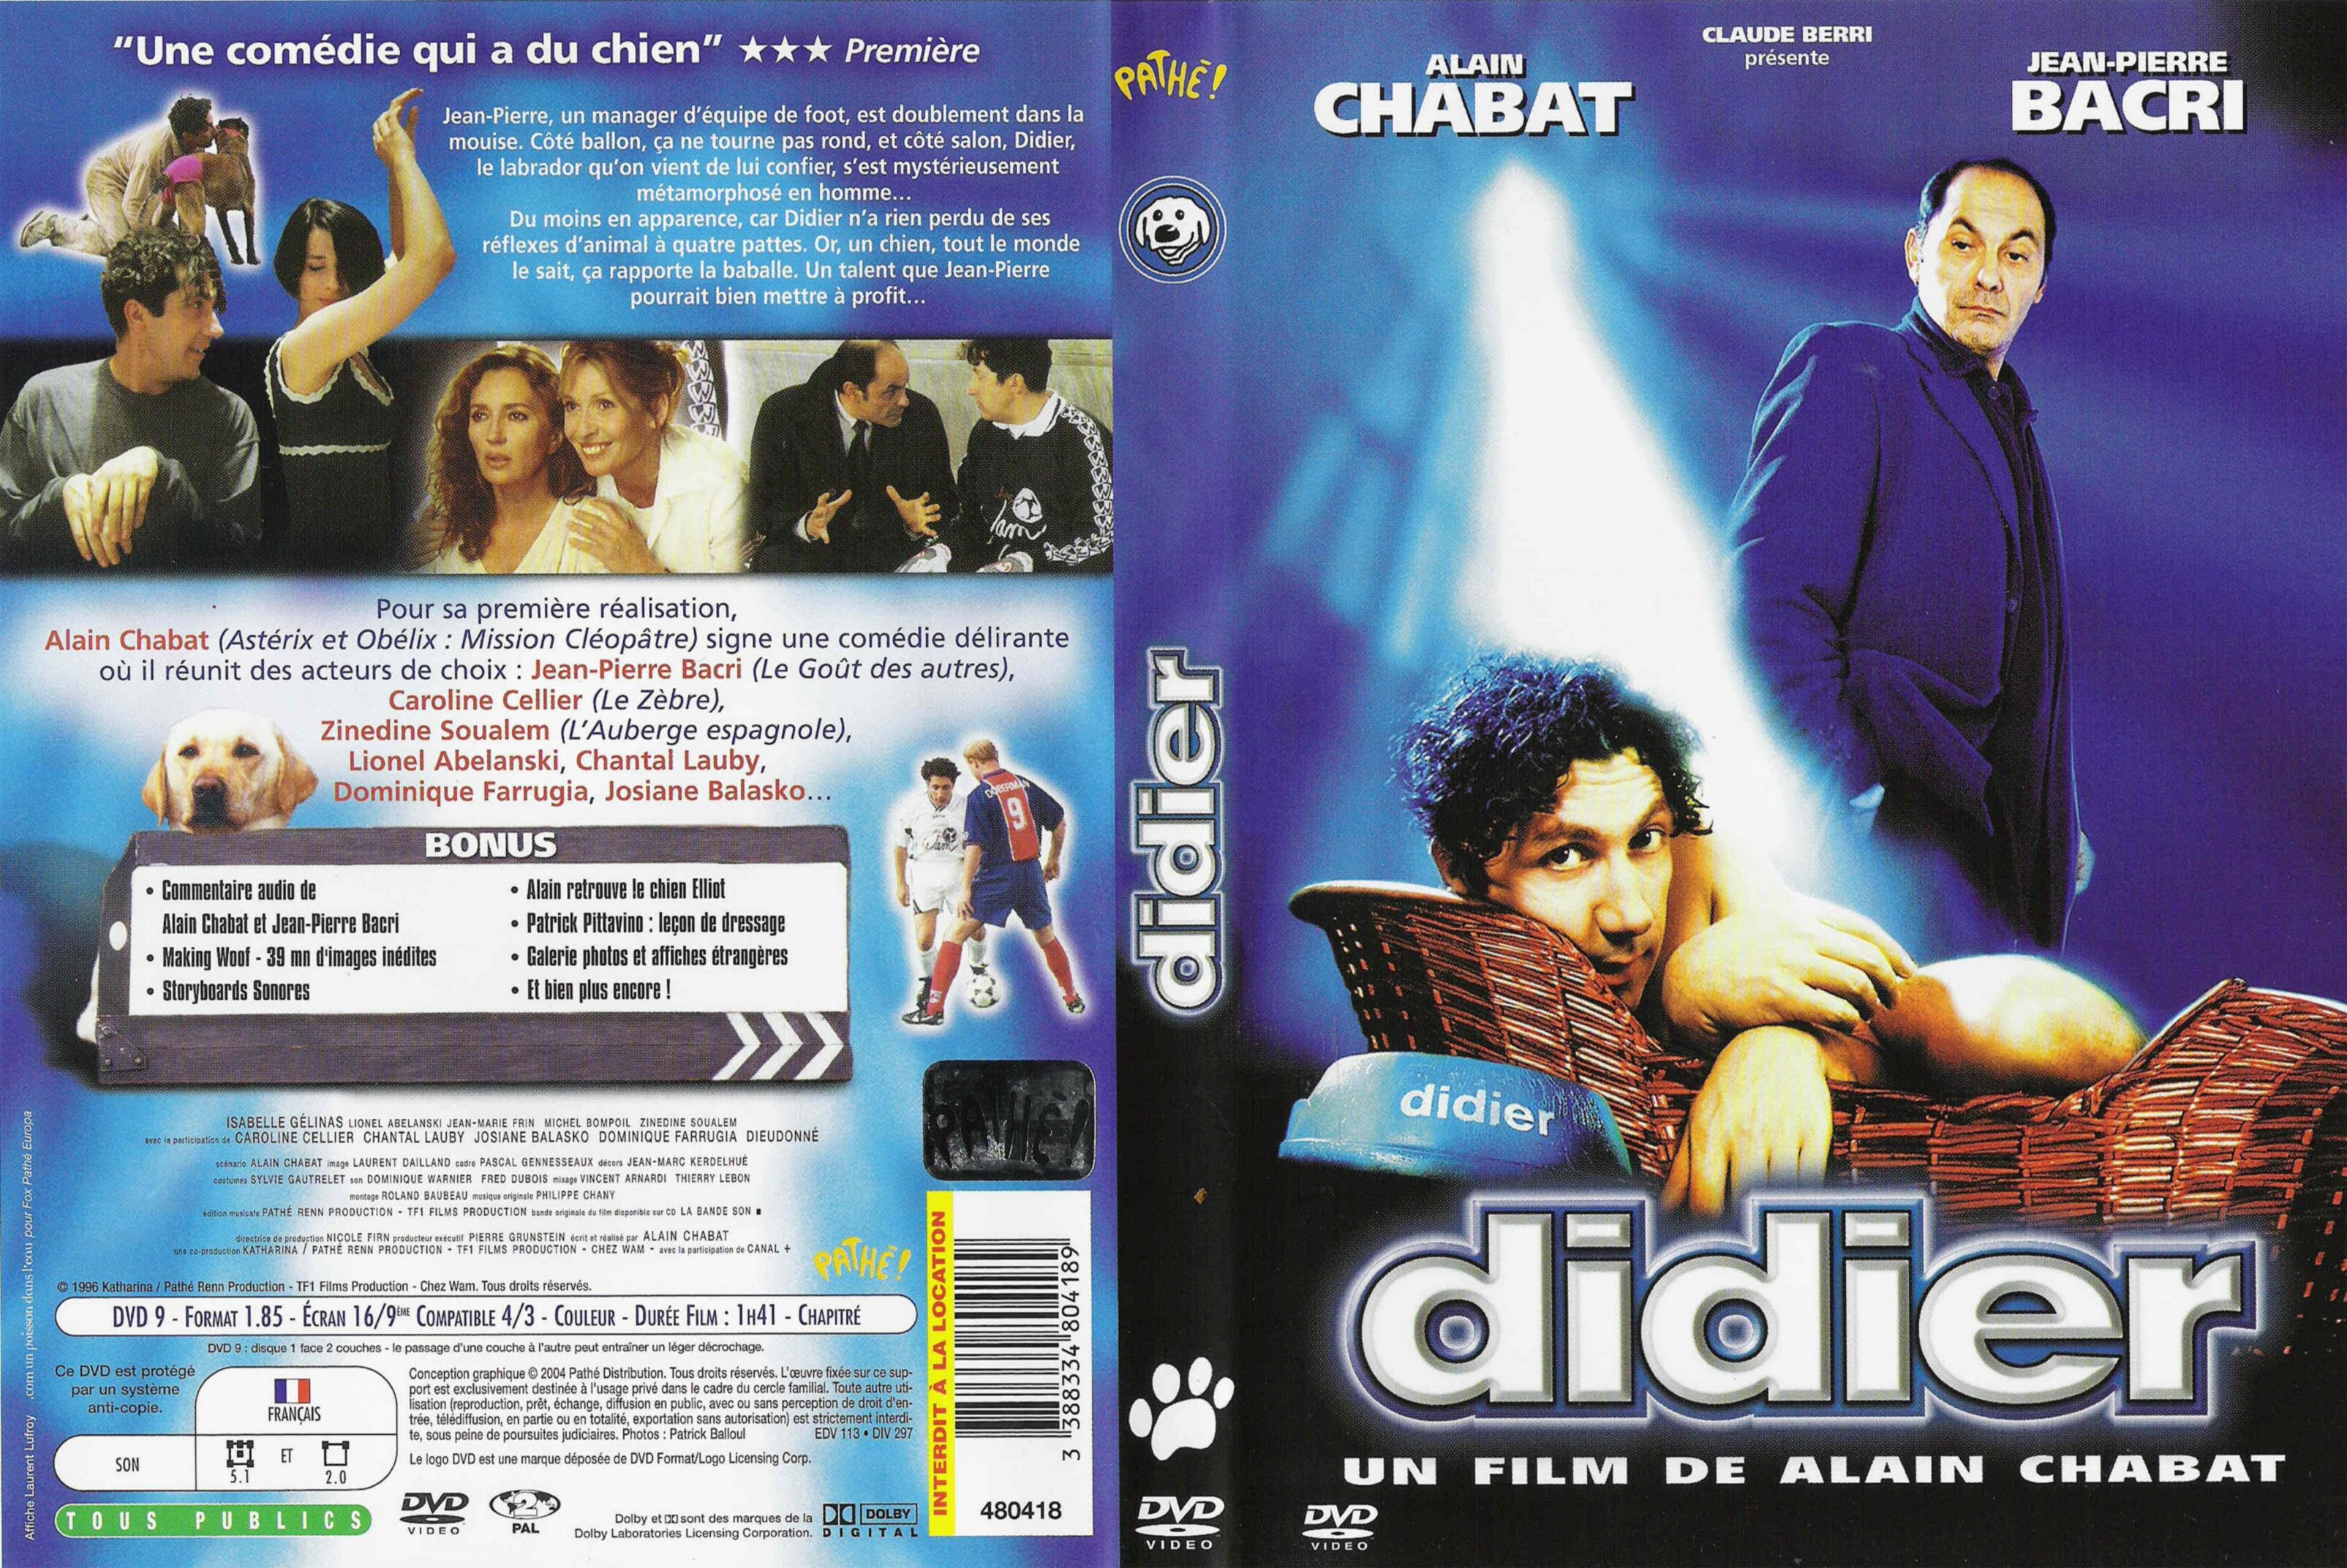 Jaquette DVD Didier